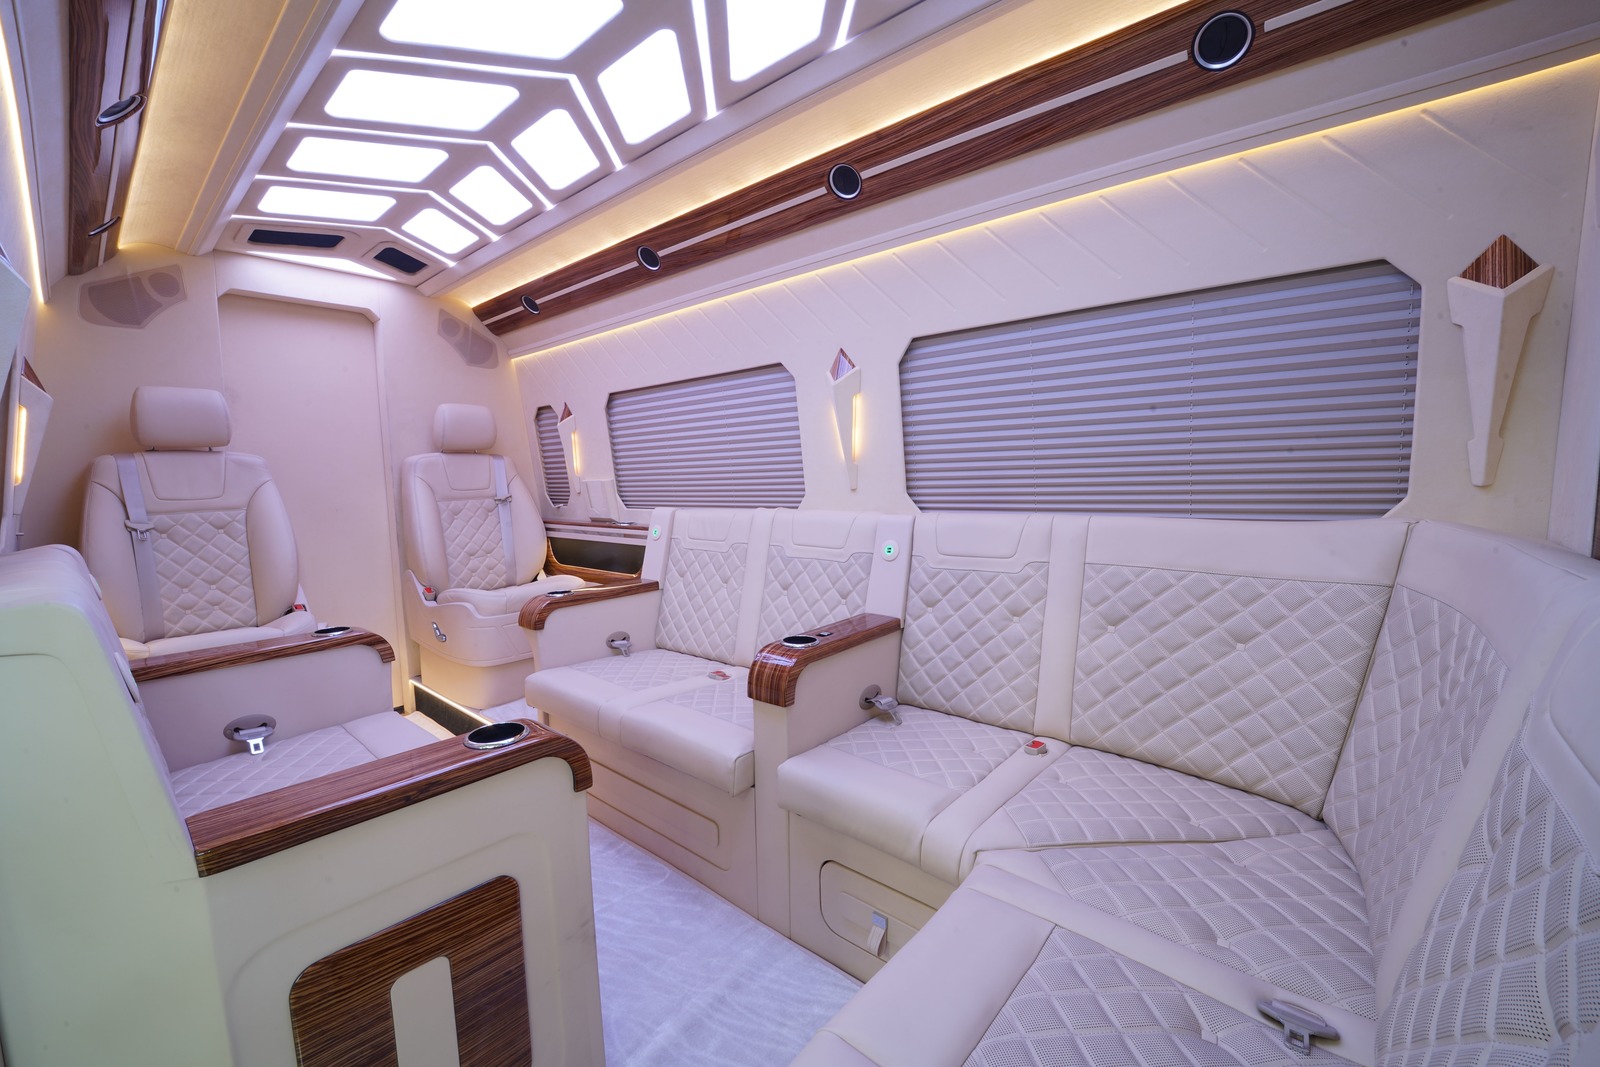 luxury business van